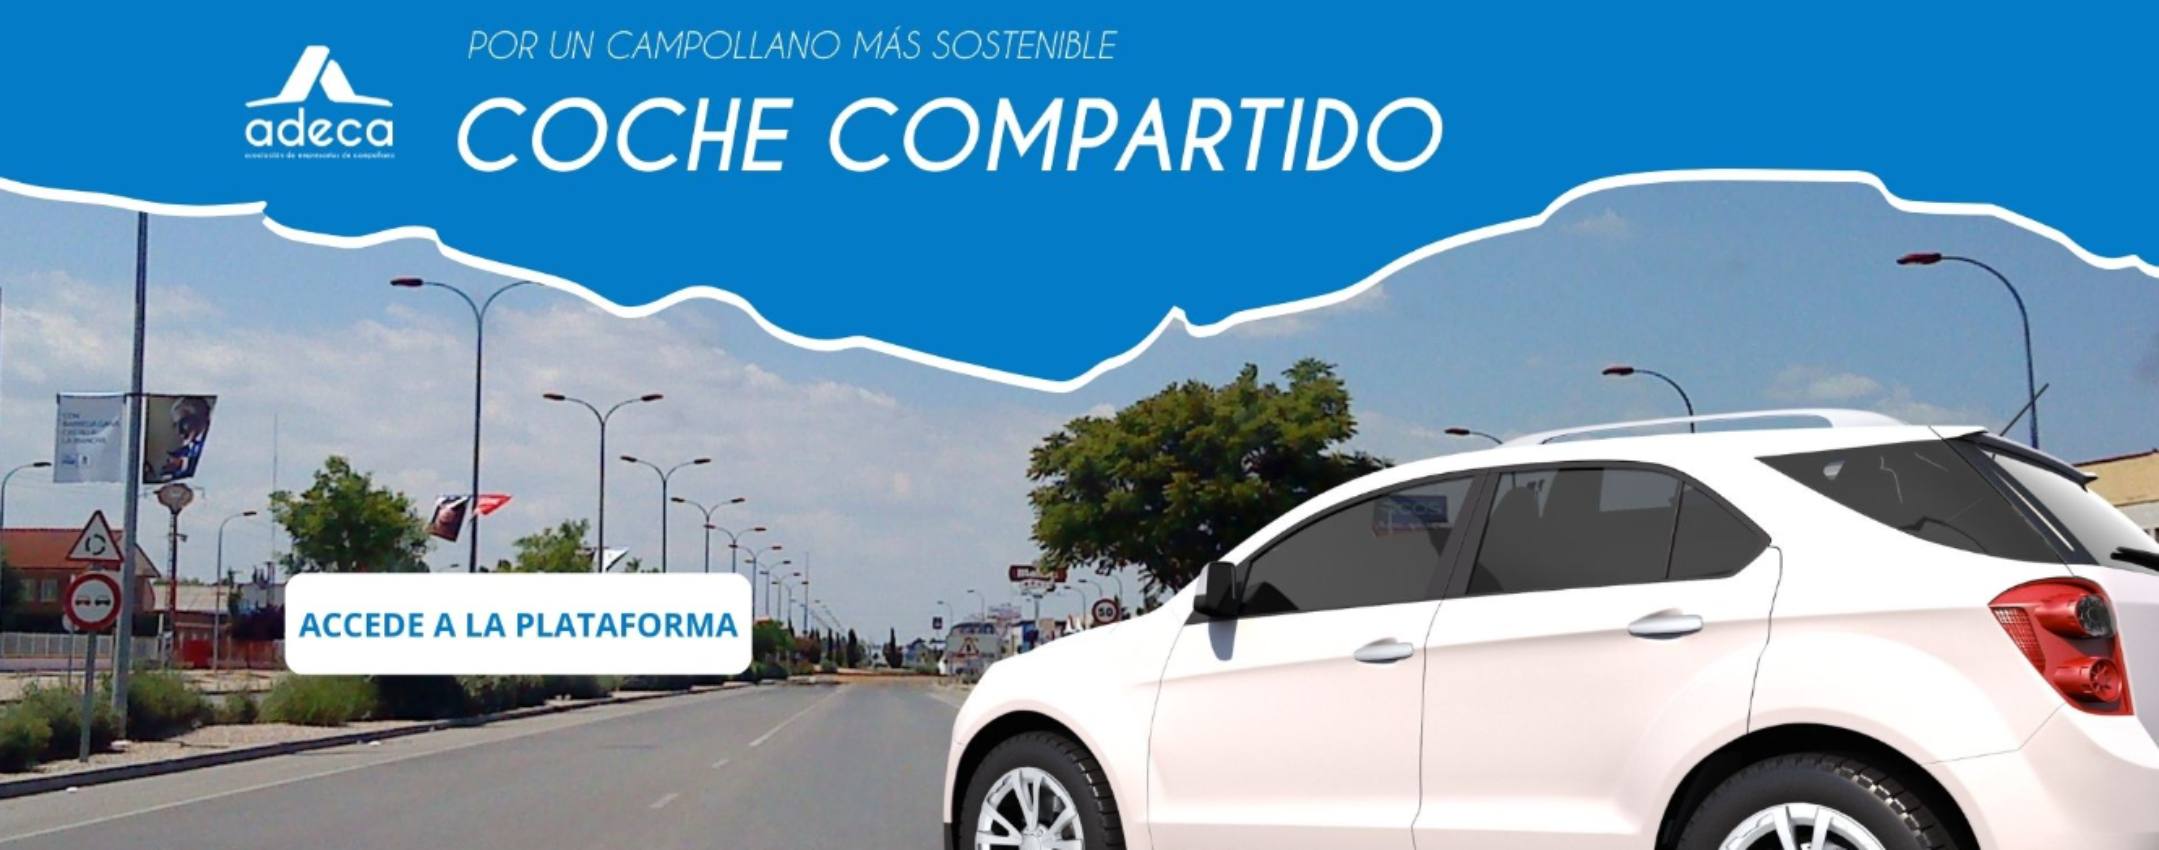 Adeca presenta la nueva plataforma para compartir coche y reducir el tráfico y la contaminación.